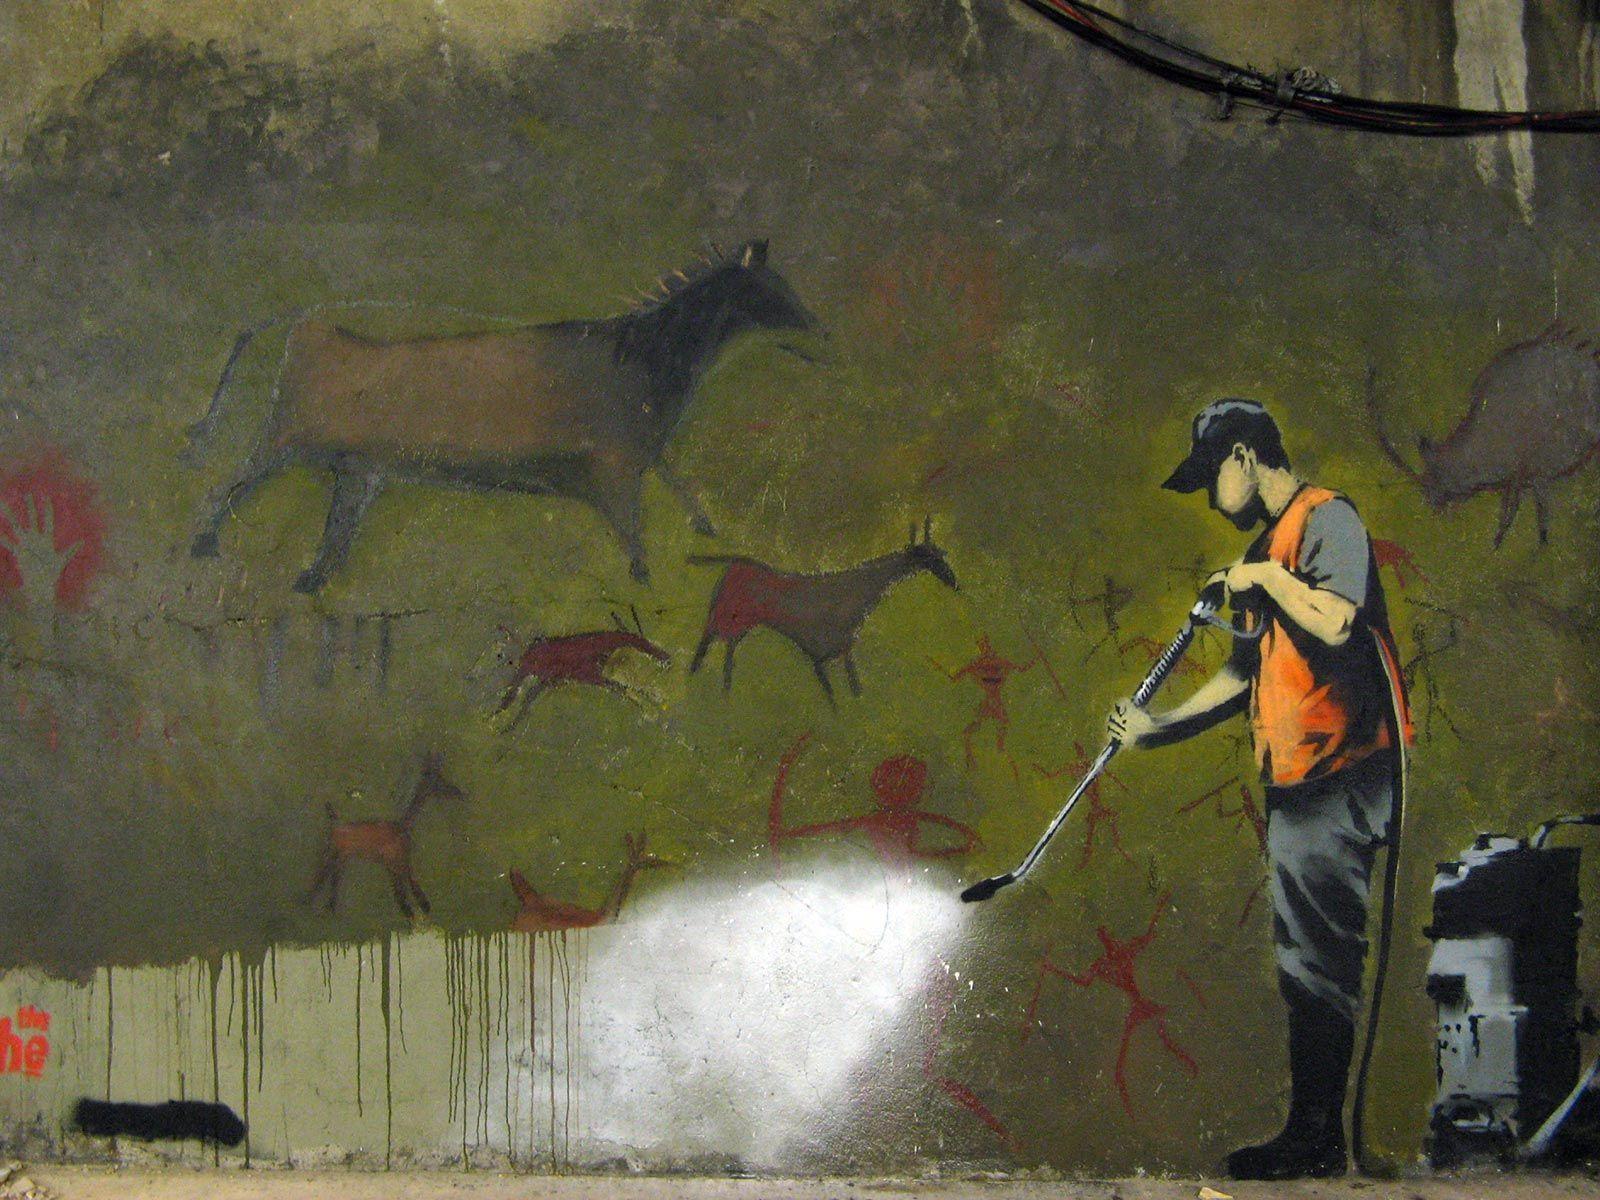 Caveman Graffiti Banksy Wallpaper